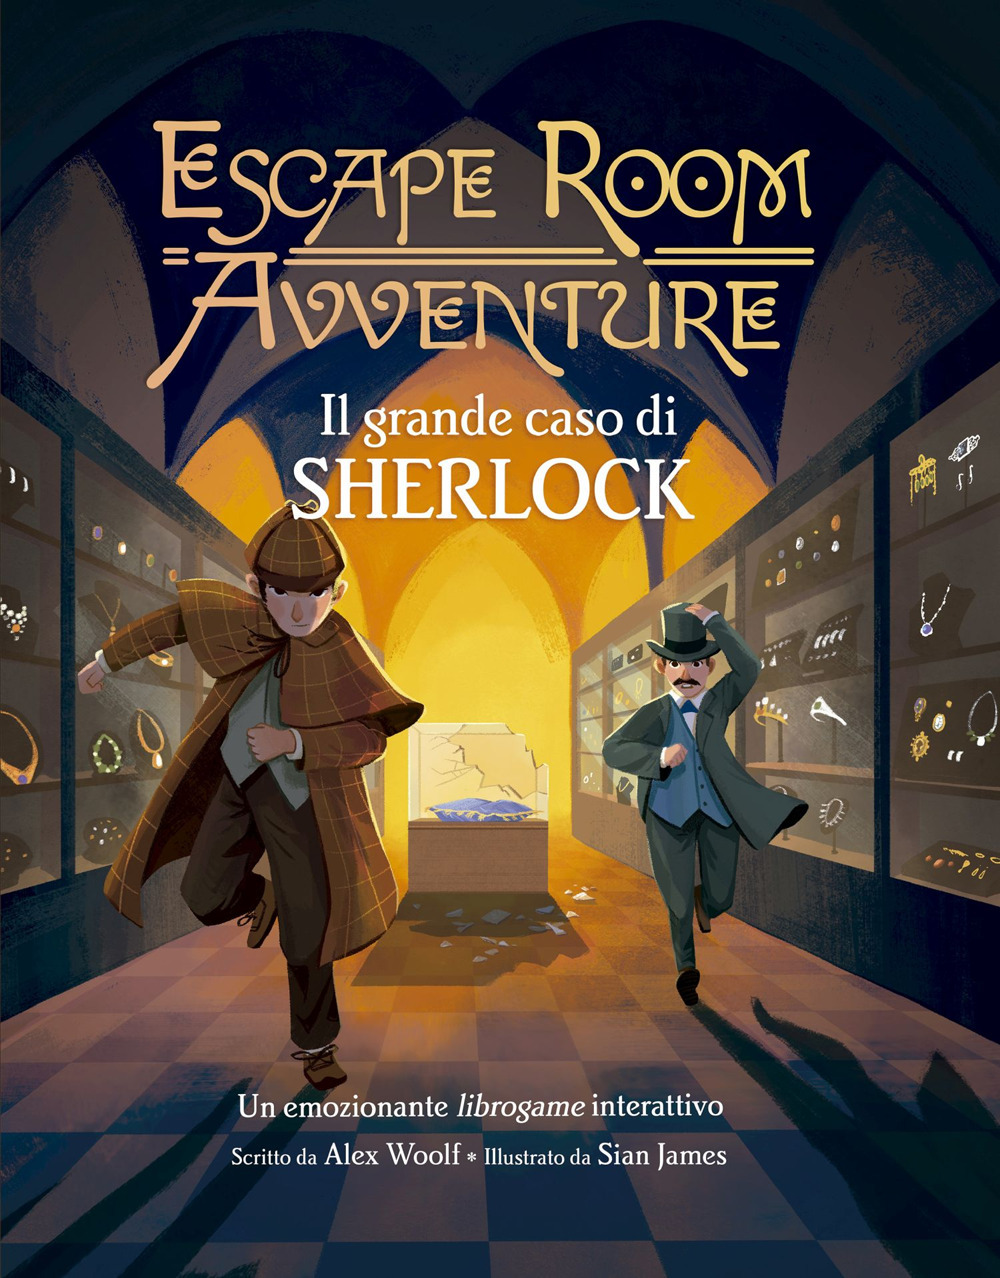 Il grande caso di Sherlock. Escape room avventure